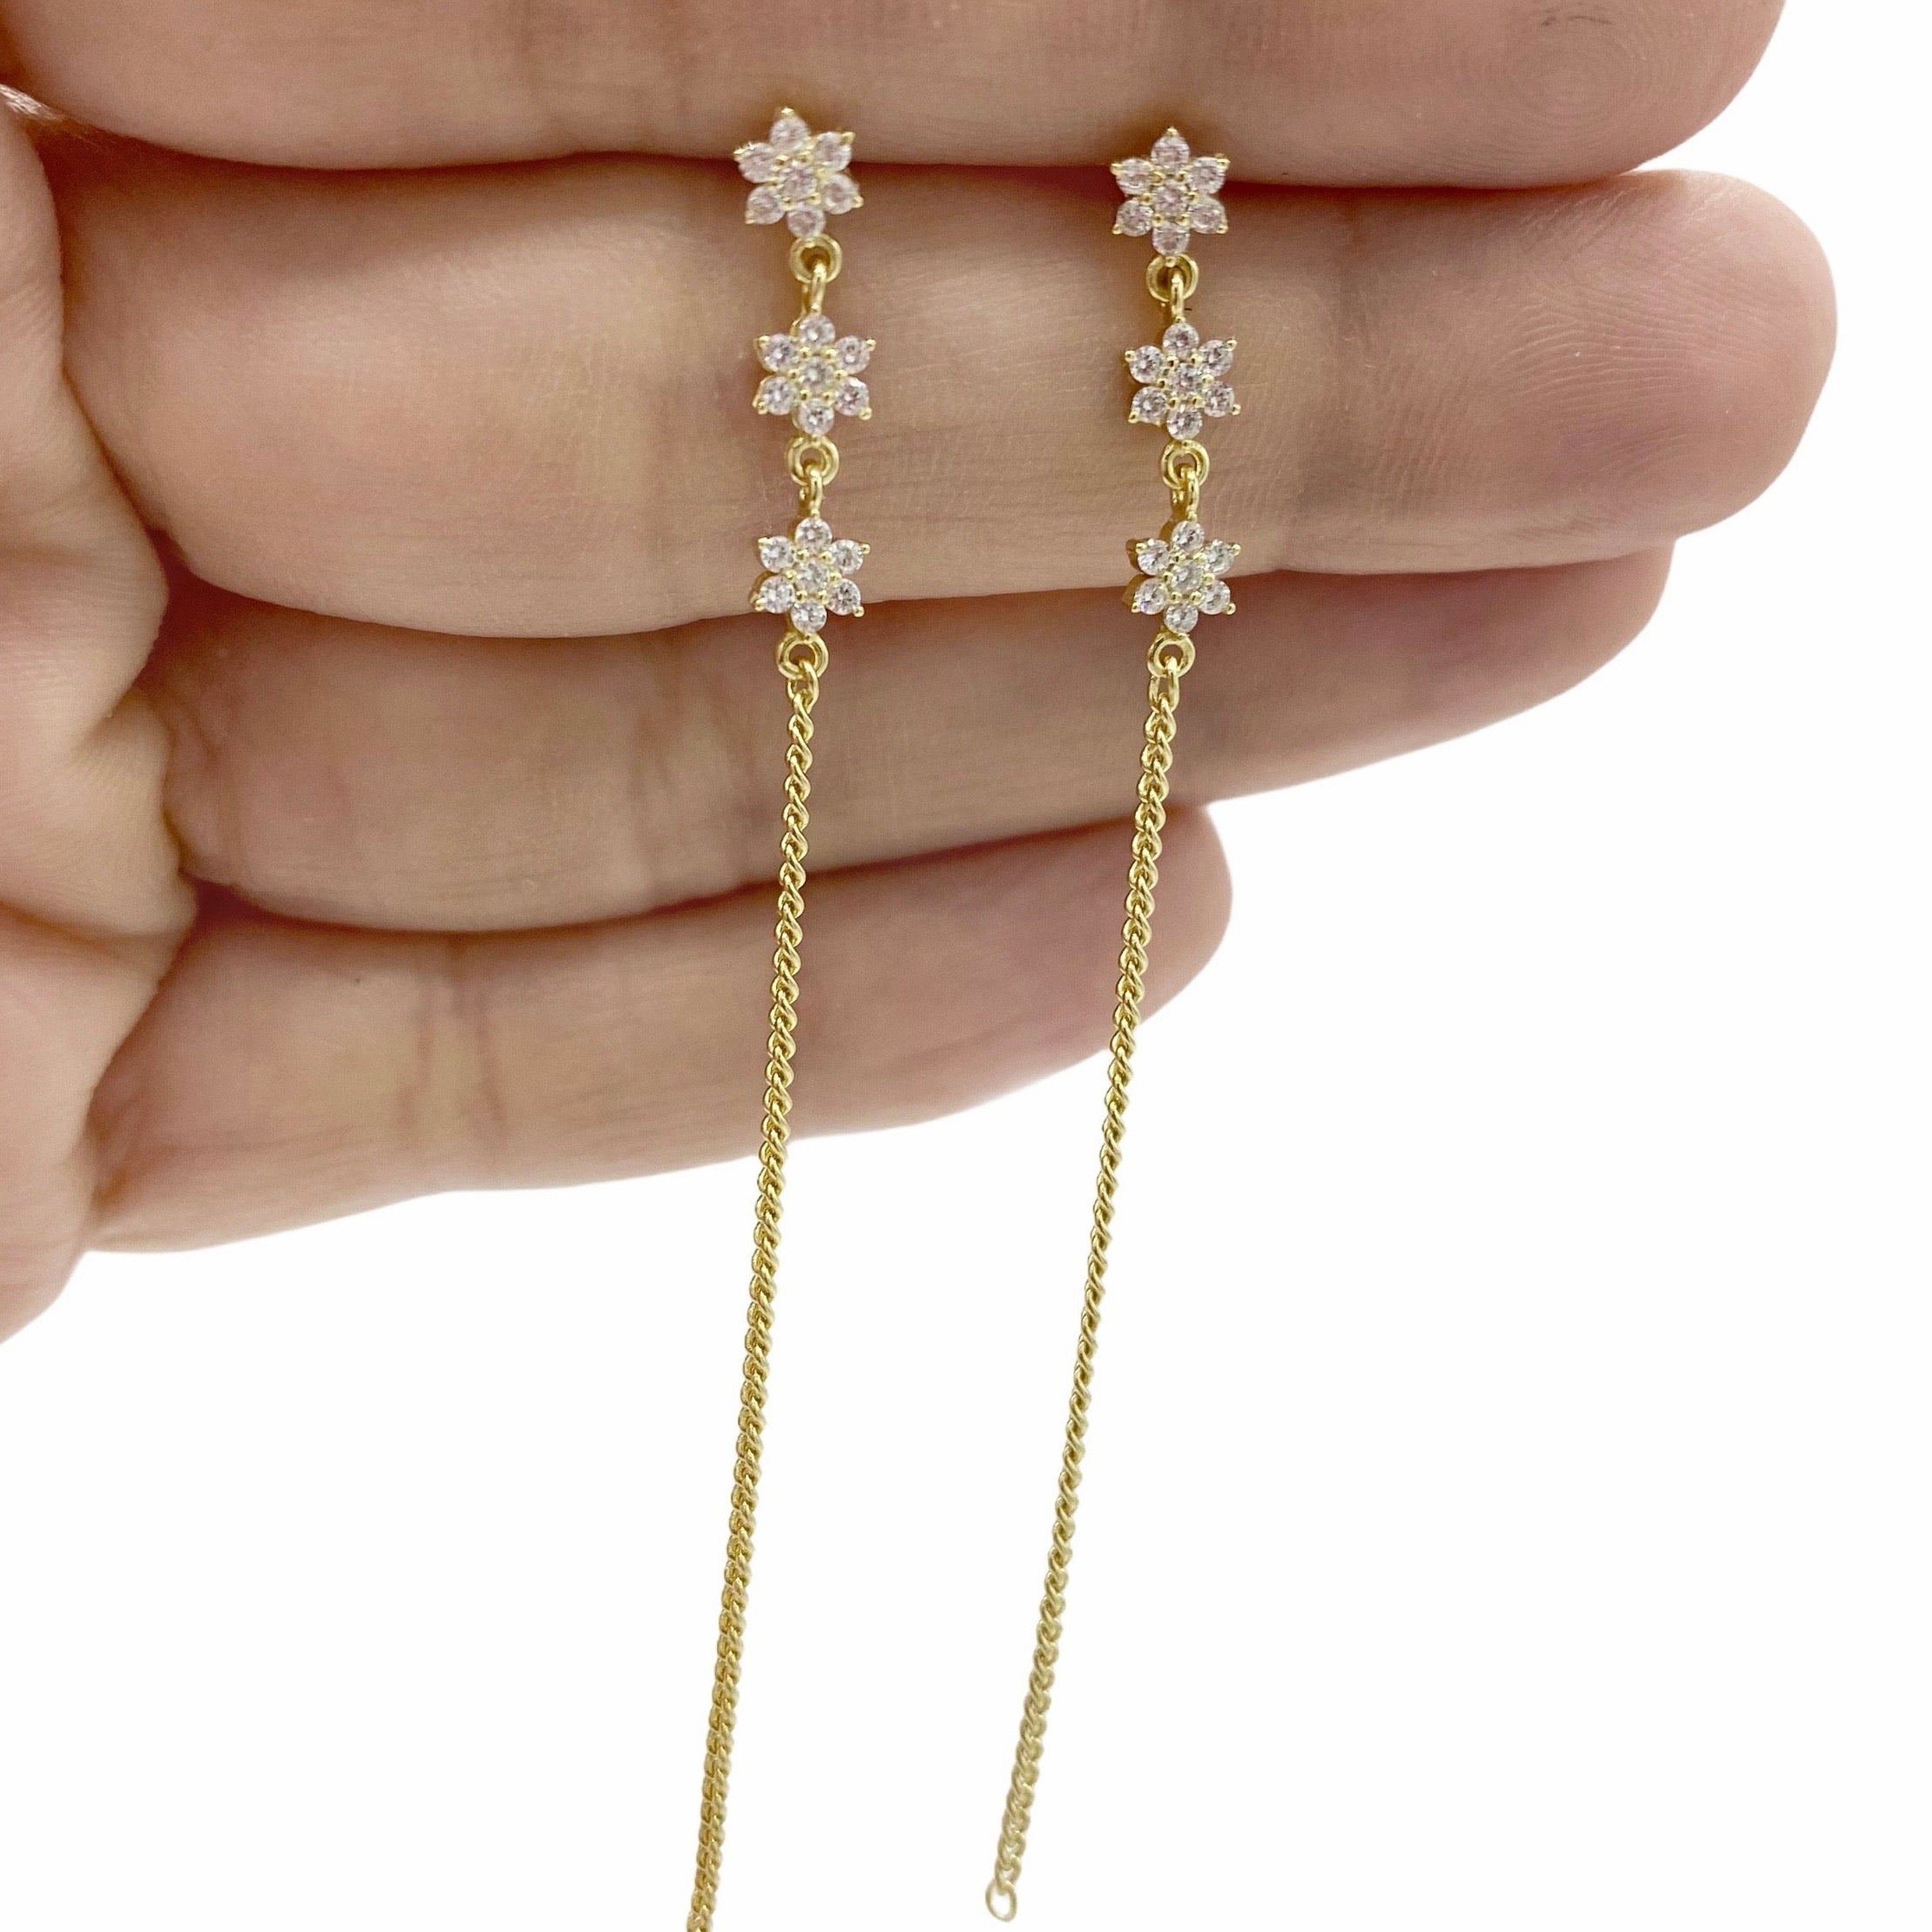 3 STARS LONG chain earrings